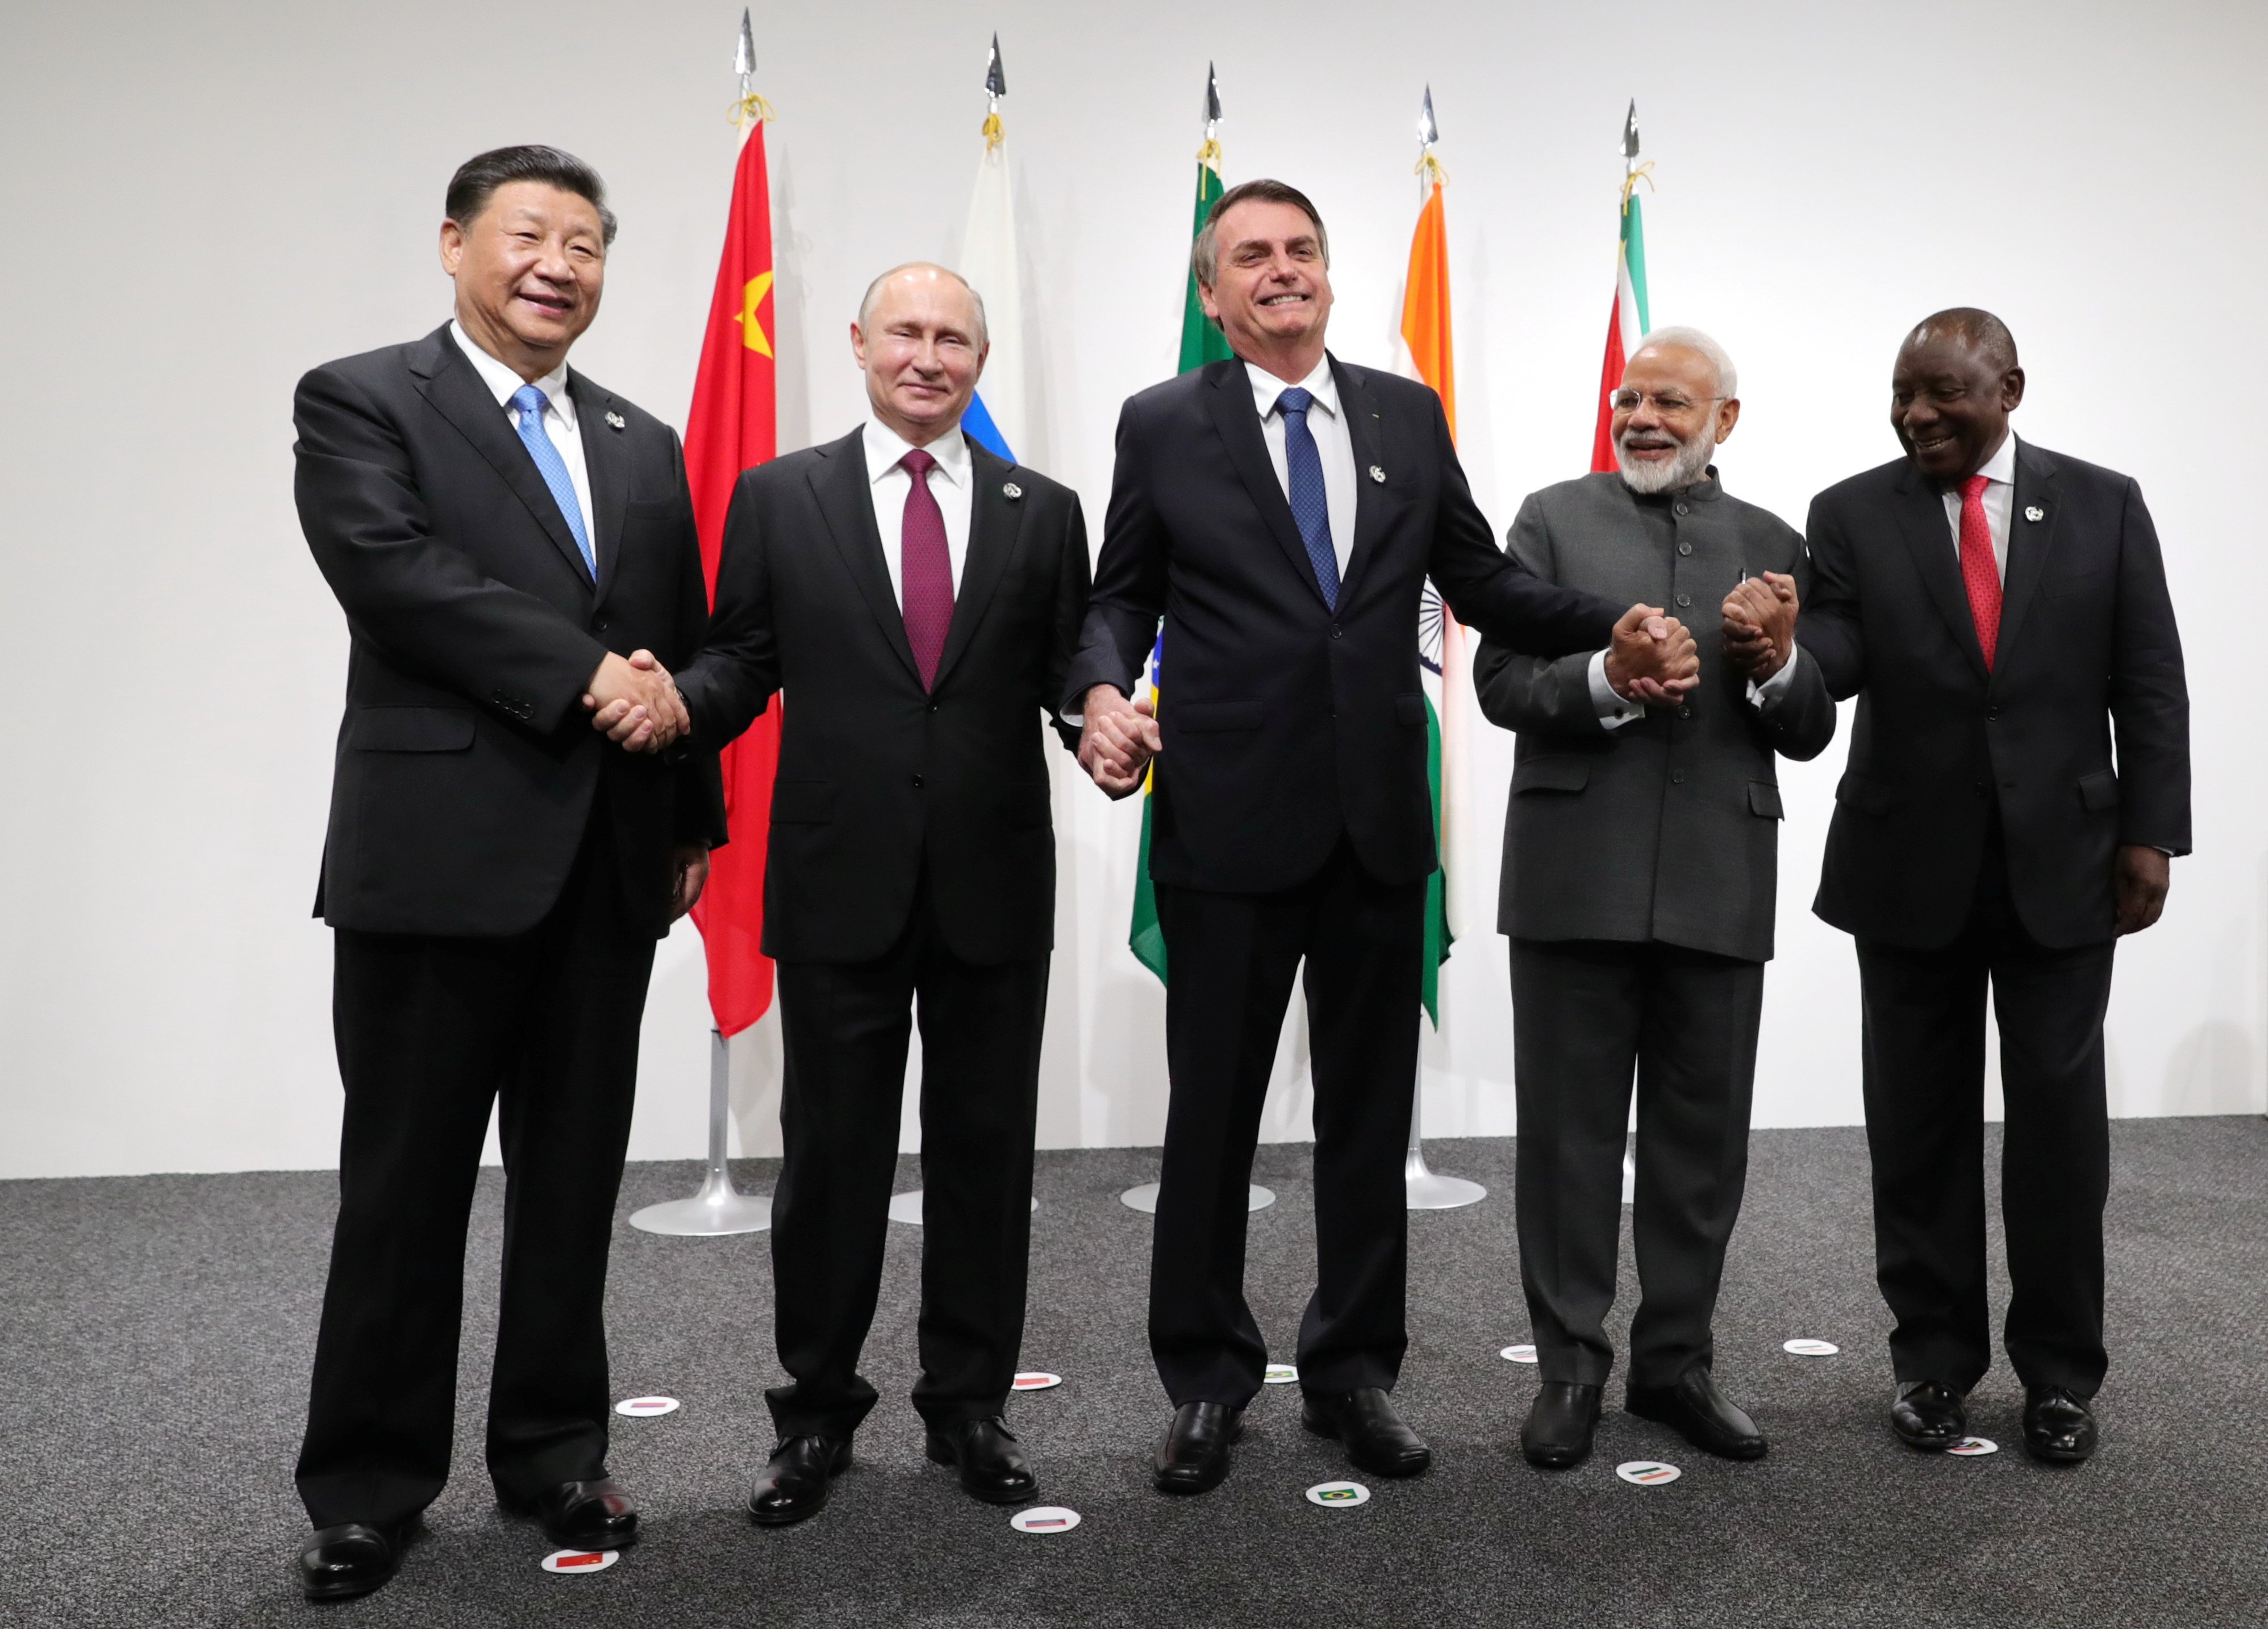 Bloque de países BRICS consideran maneras de contribuir a una solución de la crisis en Venezuela